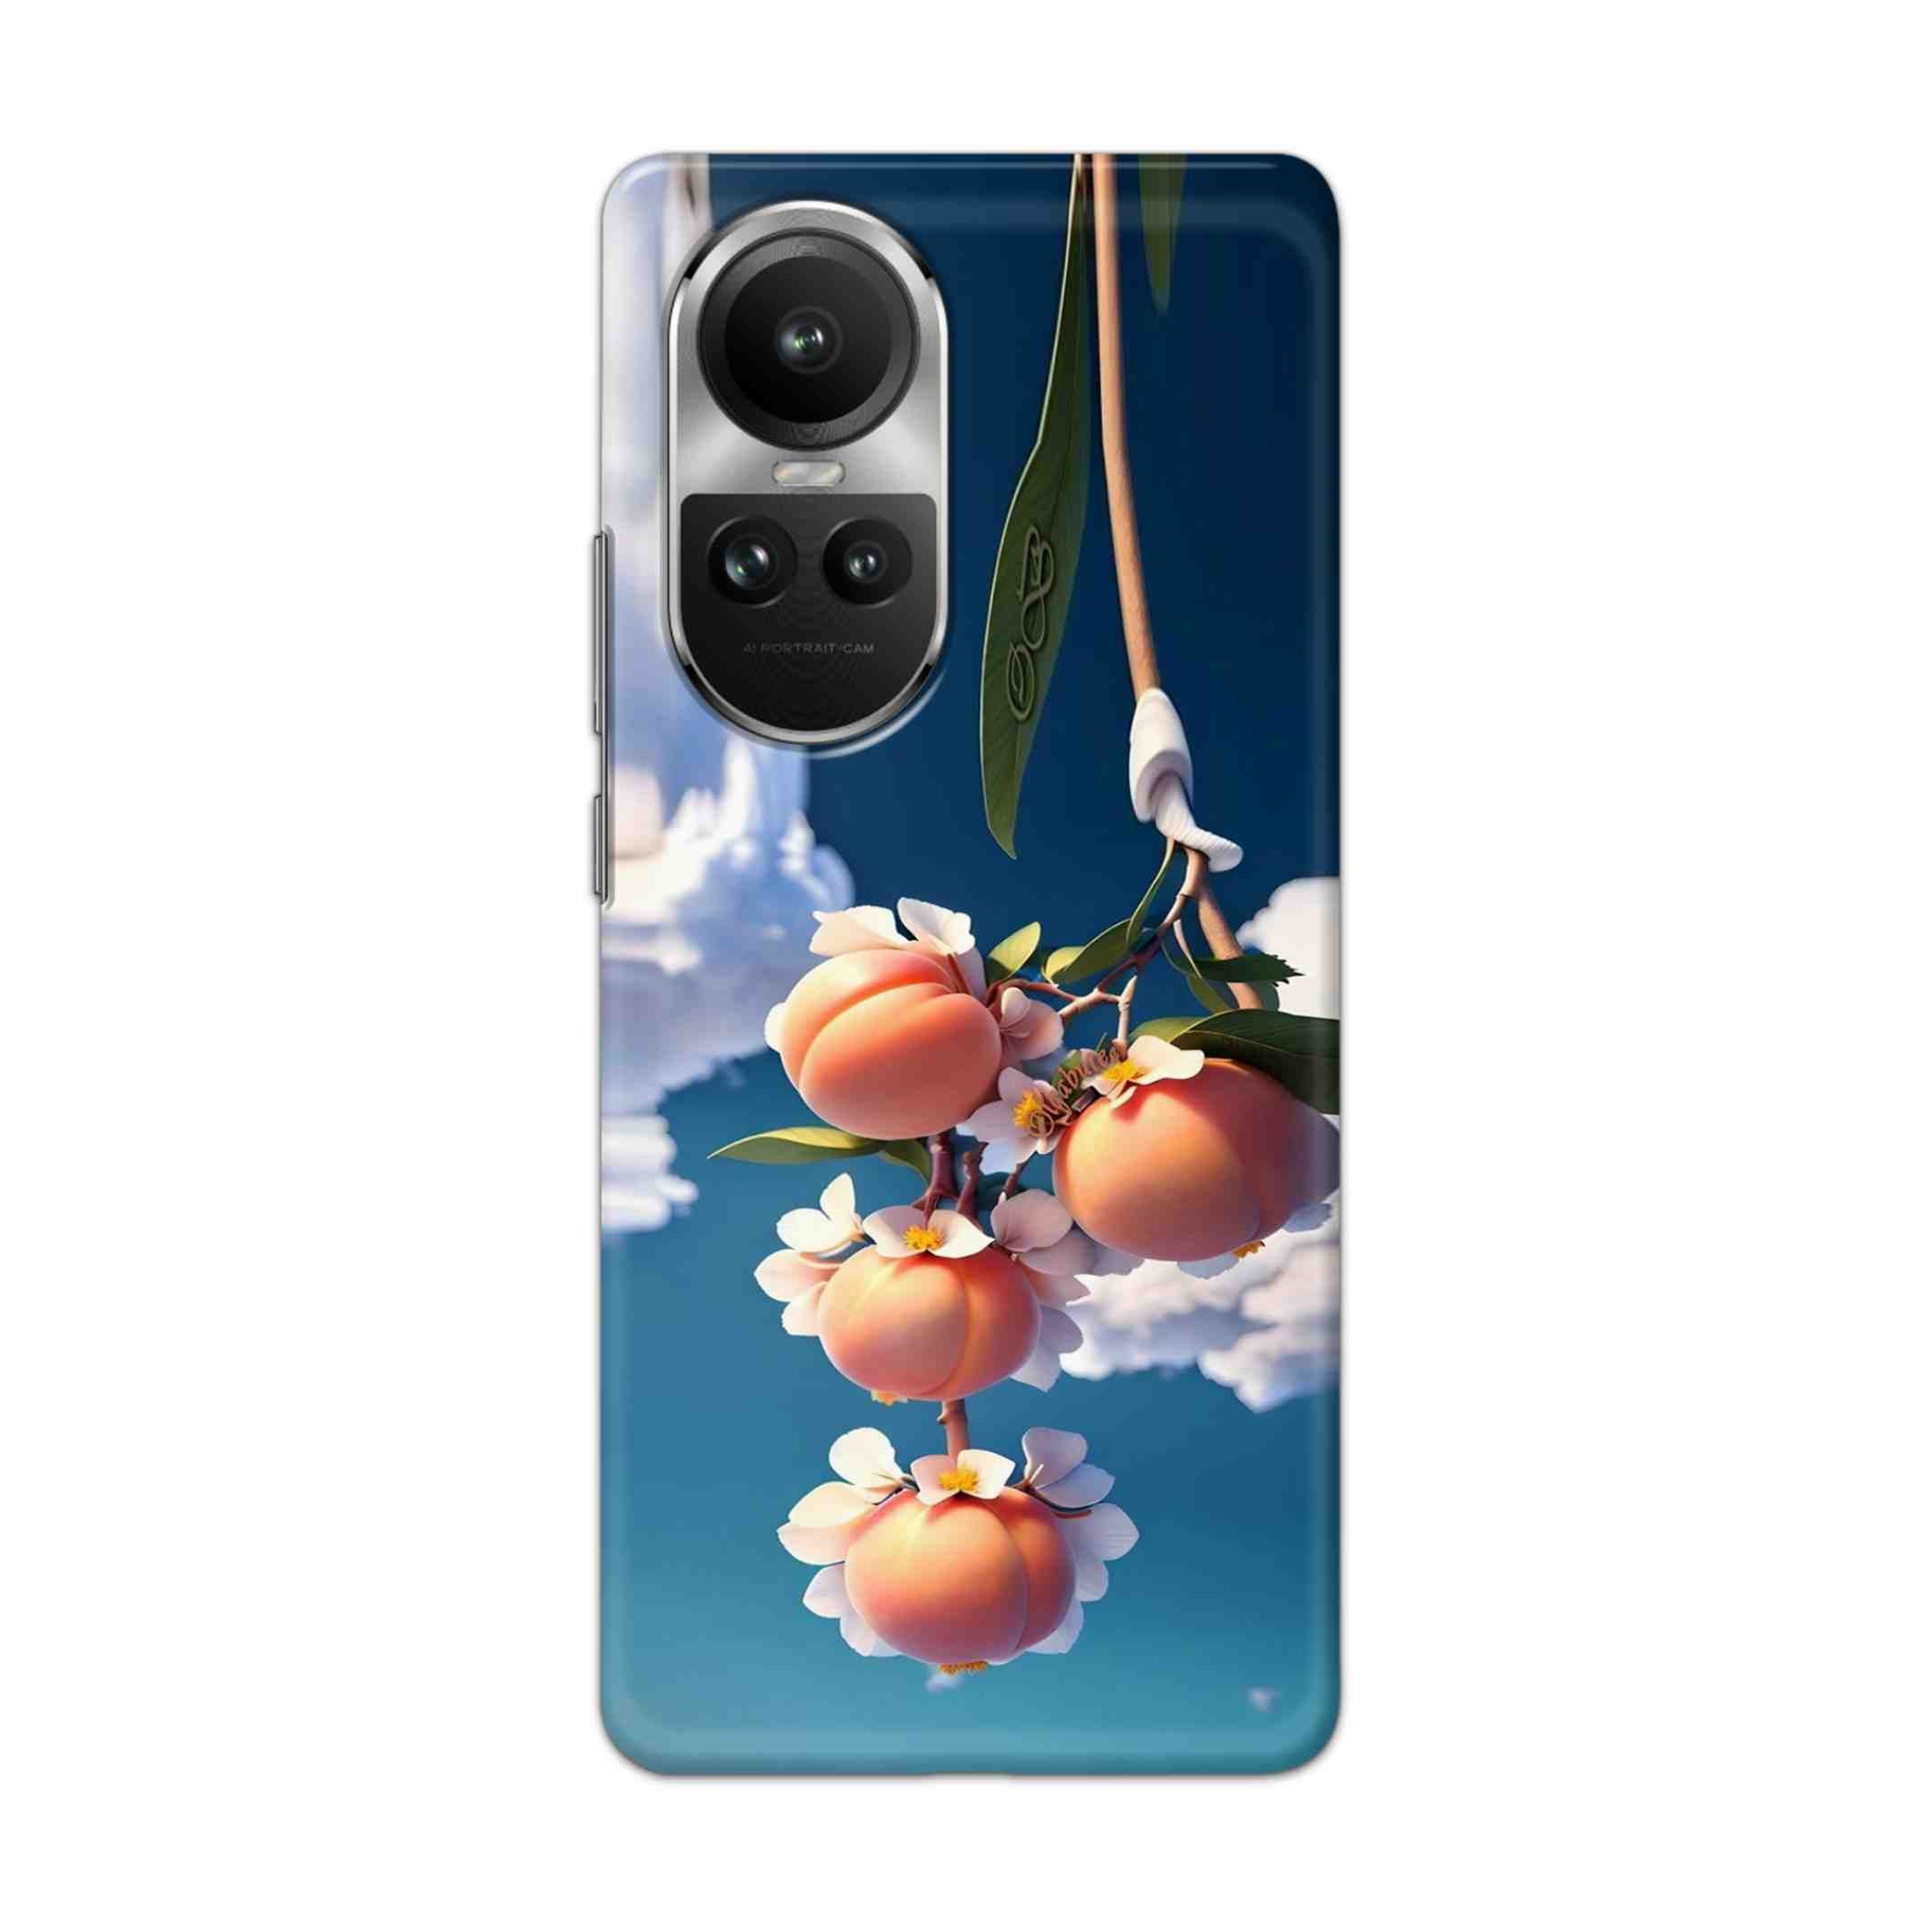 Buy Fruit Hard Back Mobile Phone Case/Cover For Oppo Reno 10 5G Online